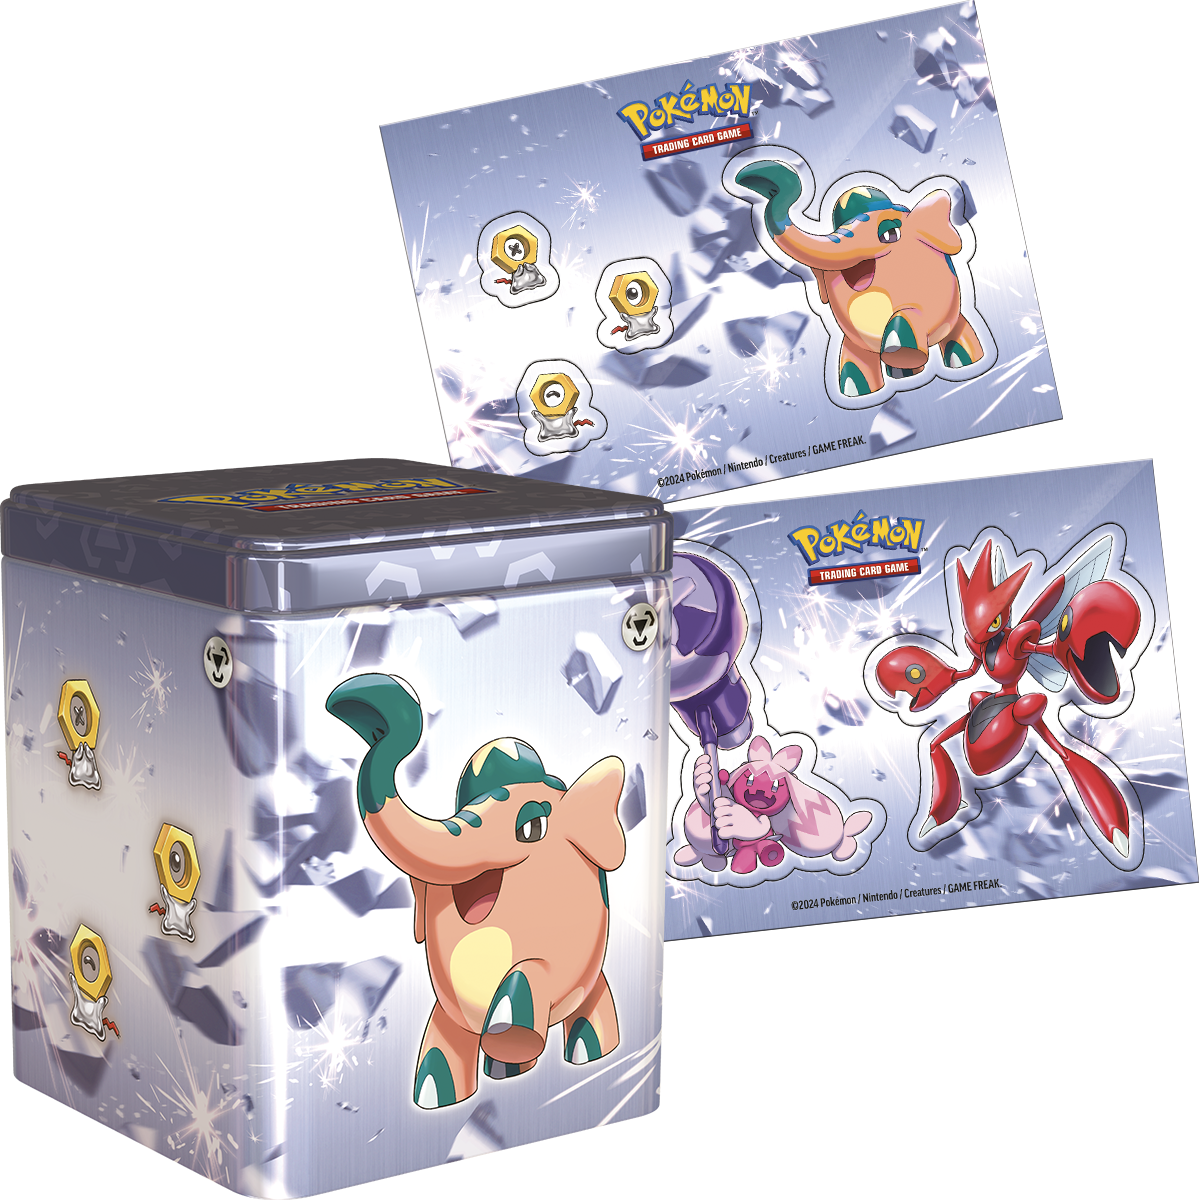 Pokémon stacking tin - POKEMON